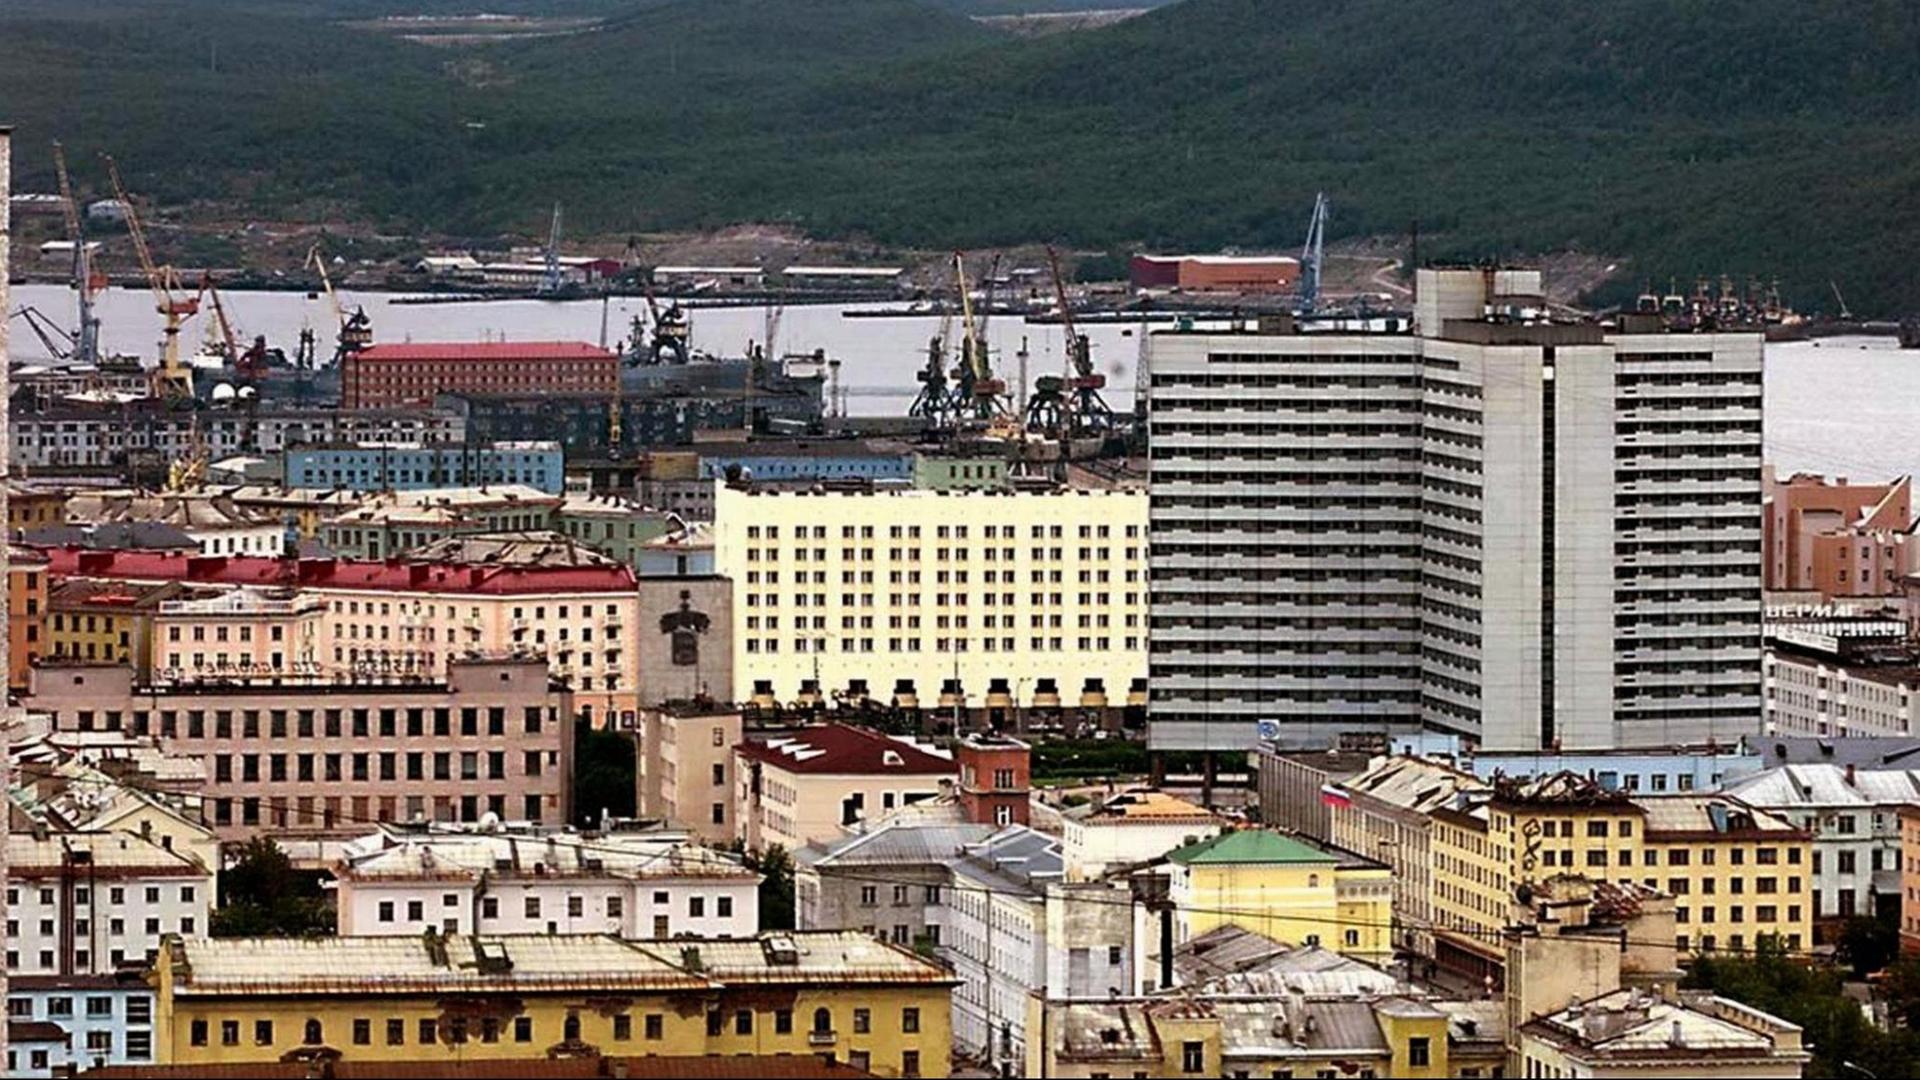 Übersicht über die russische Hafenstadt Murmansk auf der Halbinsel Kola, aufgenommen am 17.8.2000.